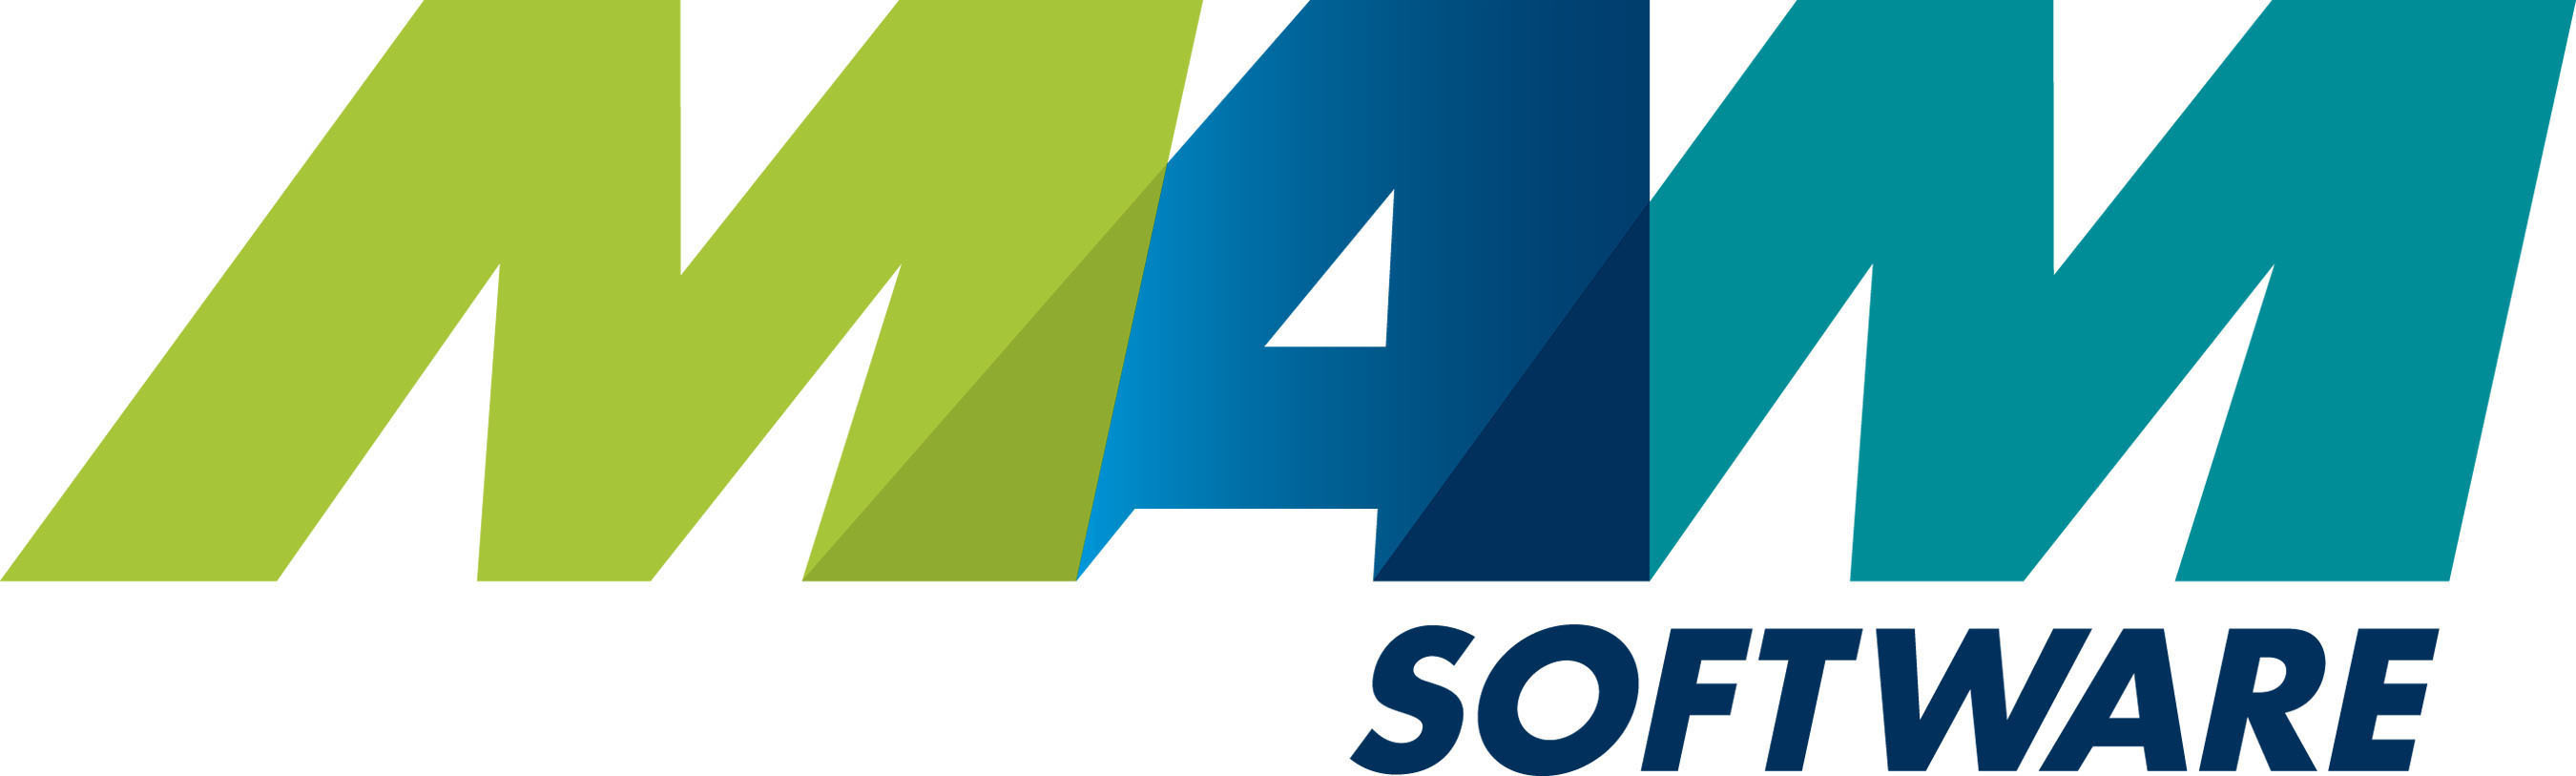 MAM Software Group, Inc. logo.